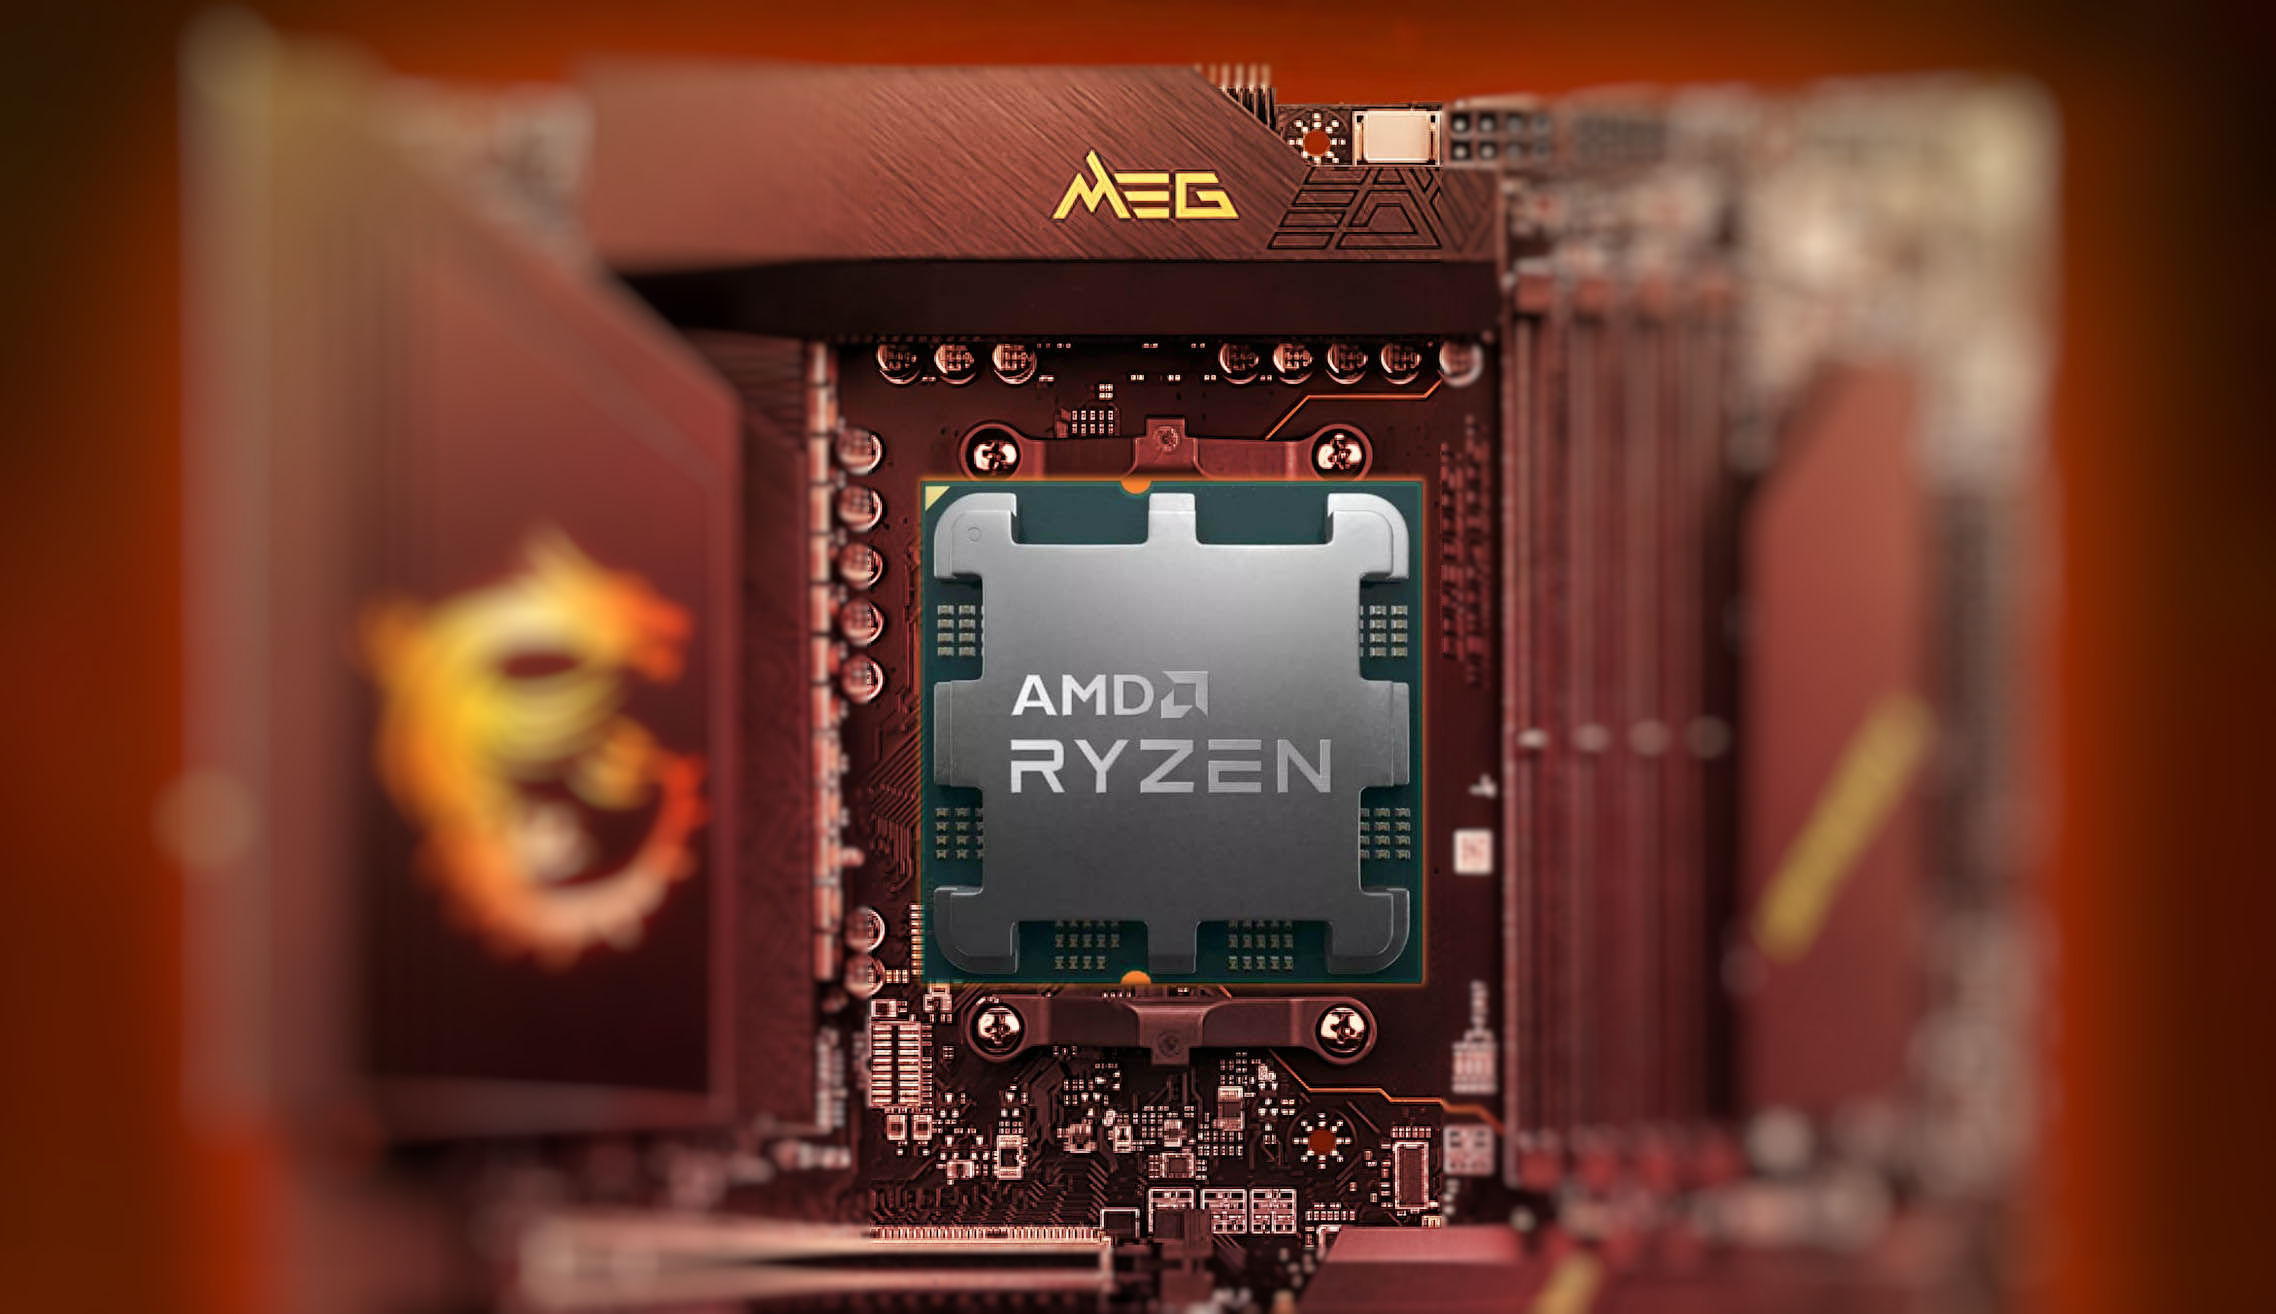 MSI’s nieuwe BIOS beperkt de spanning tot AMD Ryzen 7000X3D CPU’s